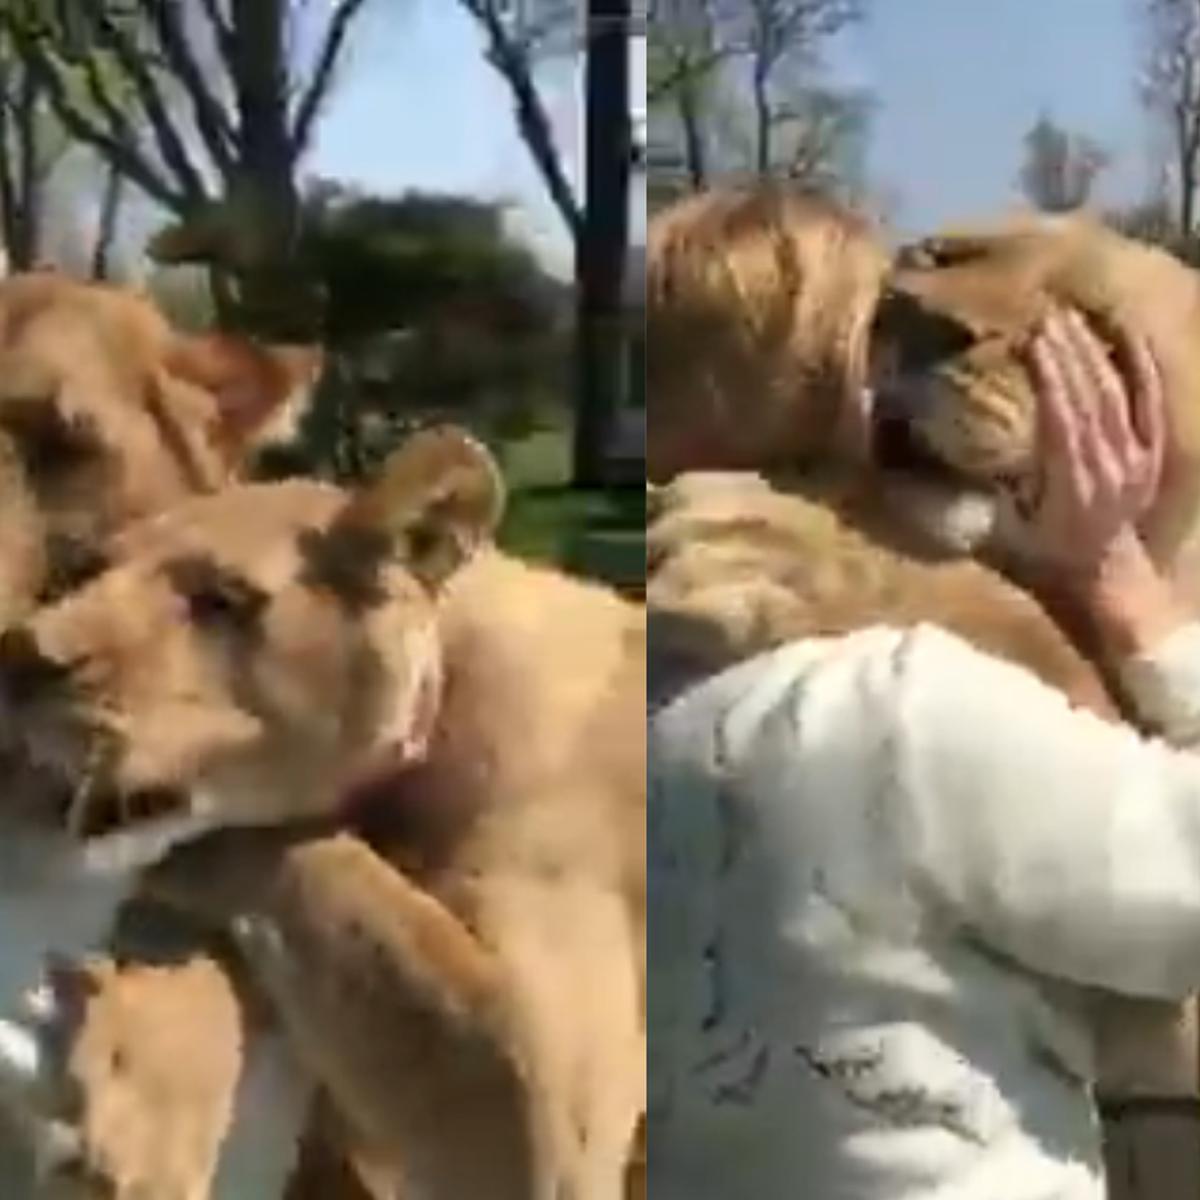 La verdadera historia del video de la señora abrazando a dos leones |  VIRALES | MAG.